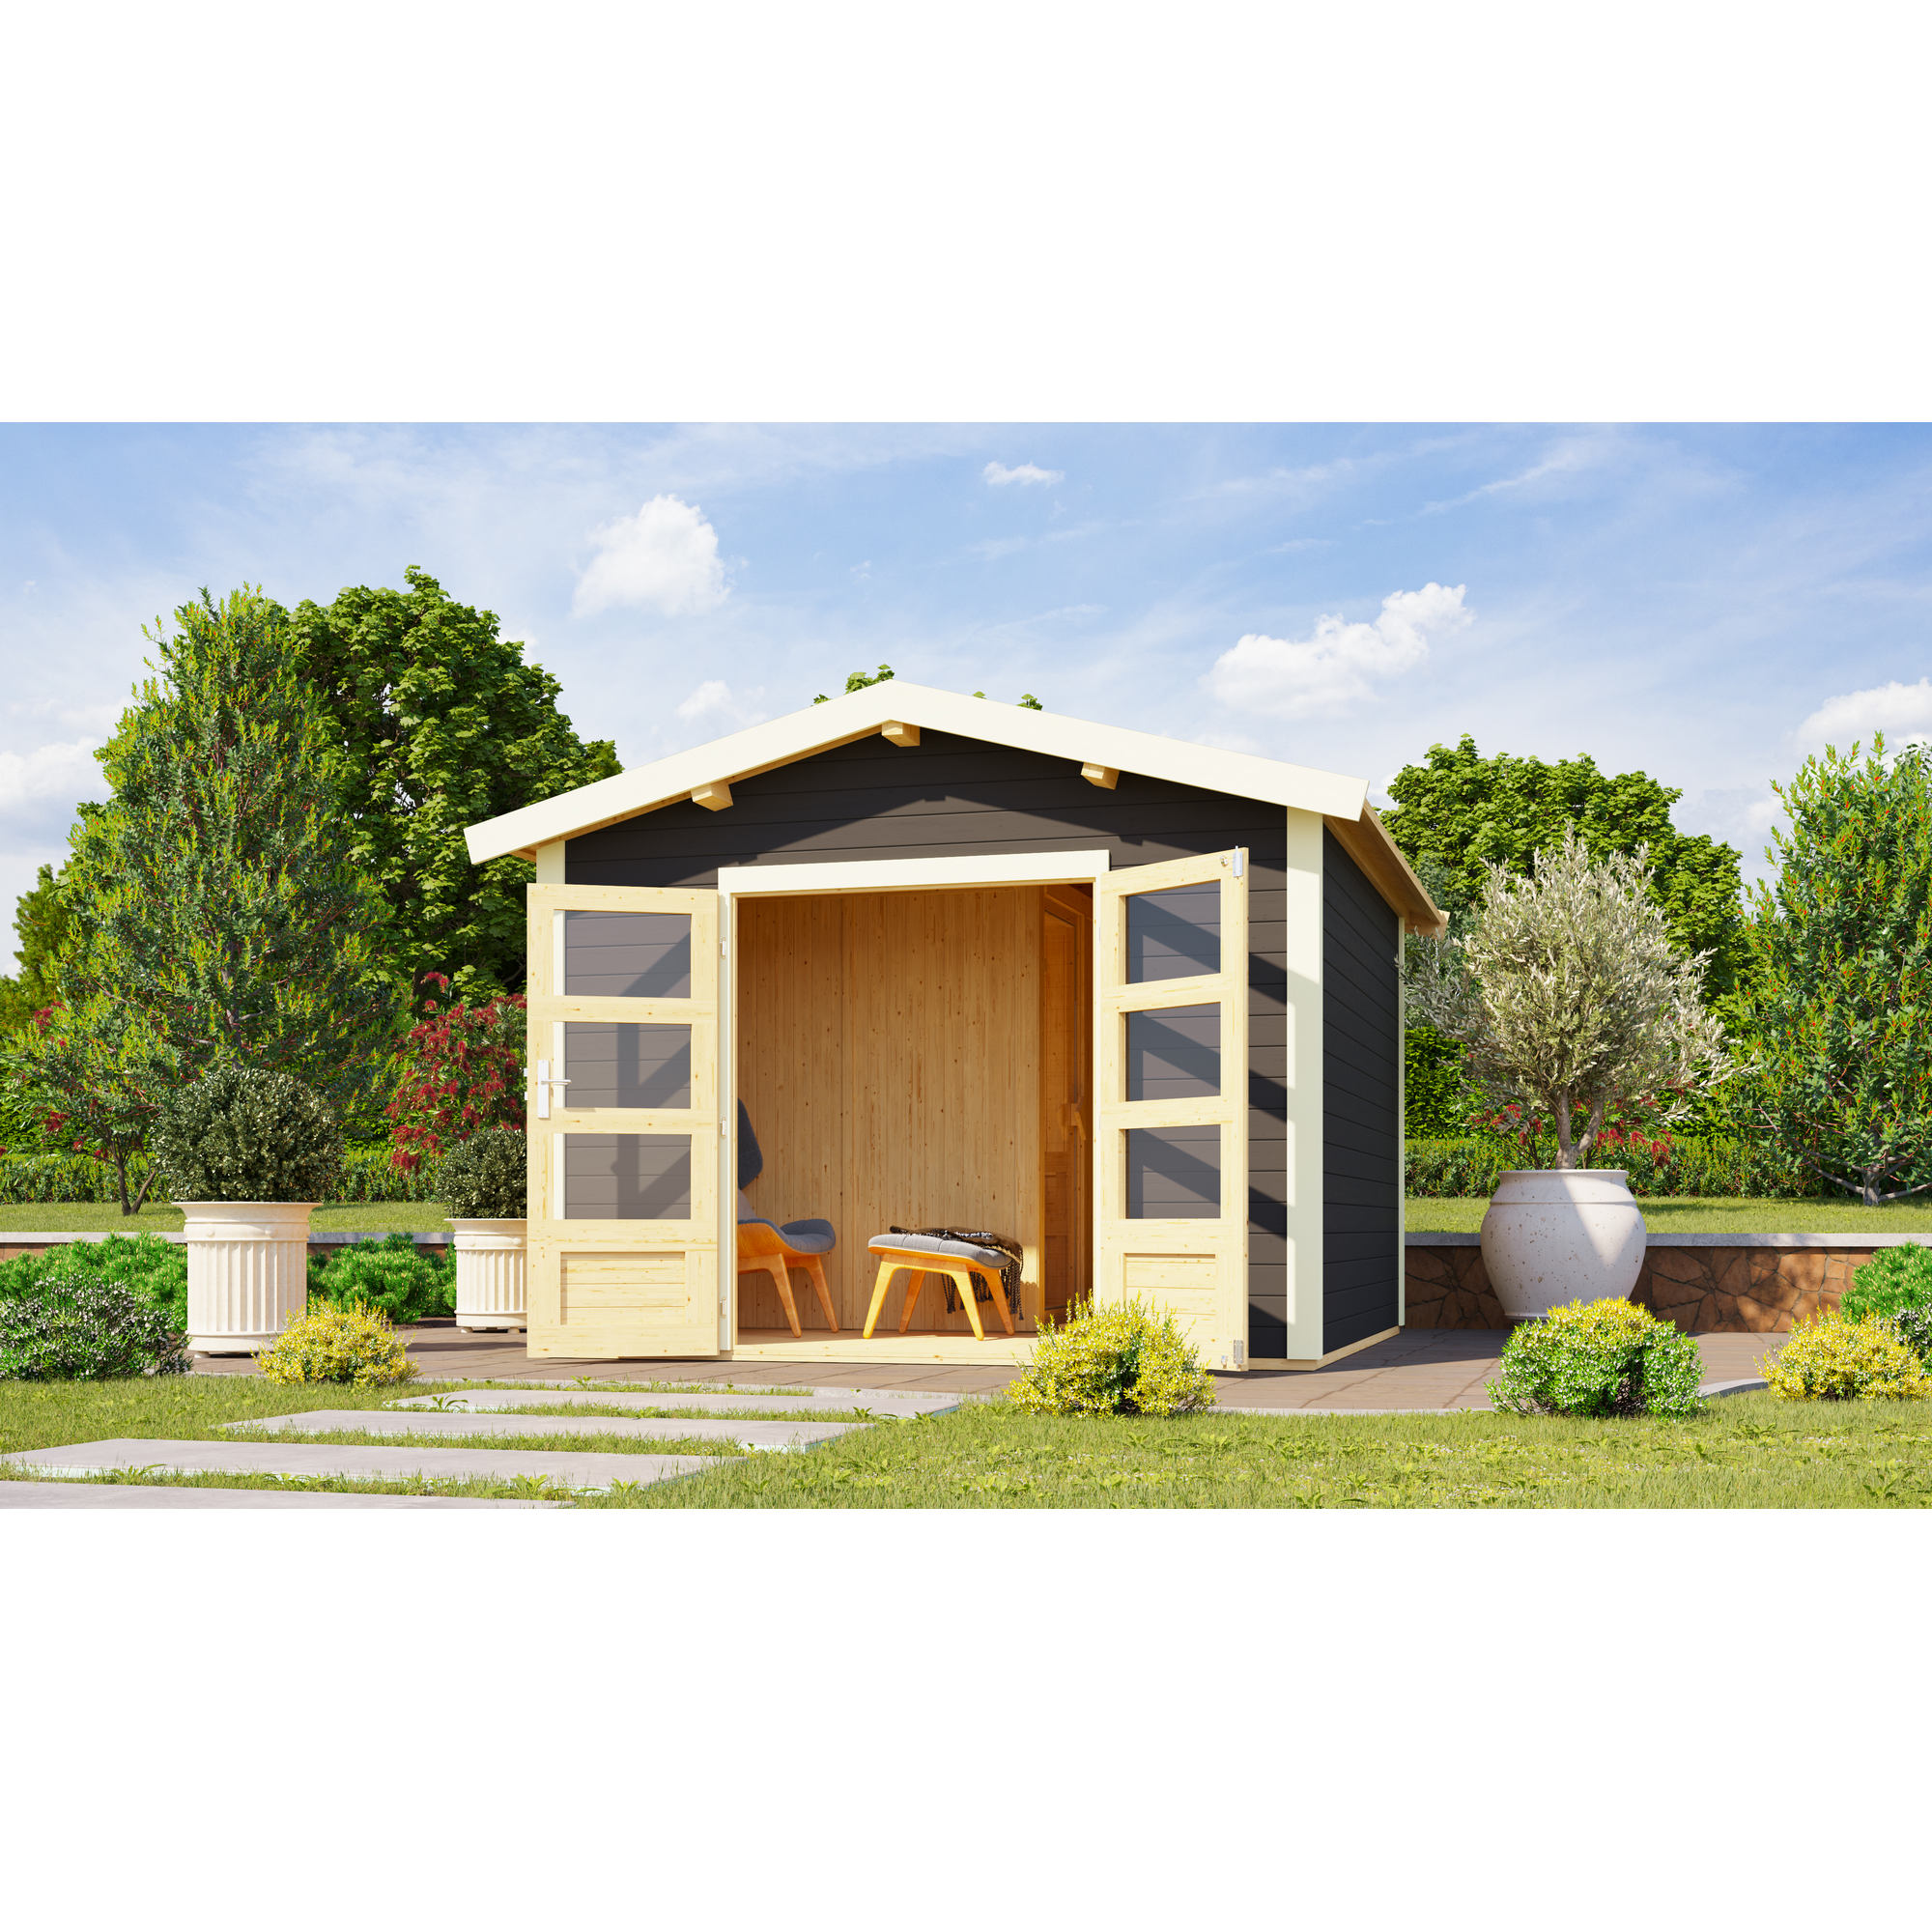 Gartenhaus mit Sauna 'Alberto' terragrau 9 kW Ofen externe Steuerung 304 x 304 x 250 cm + product picture